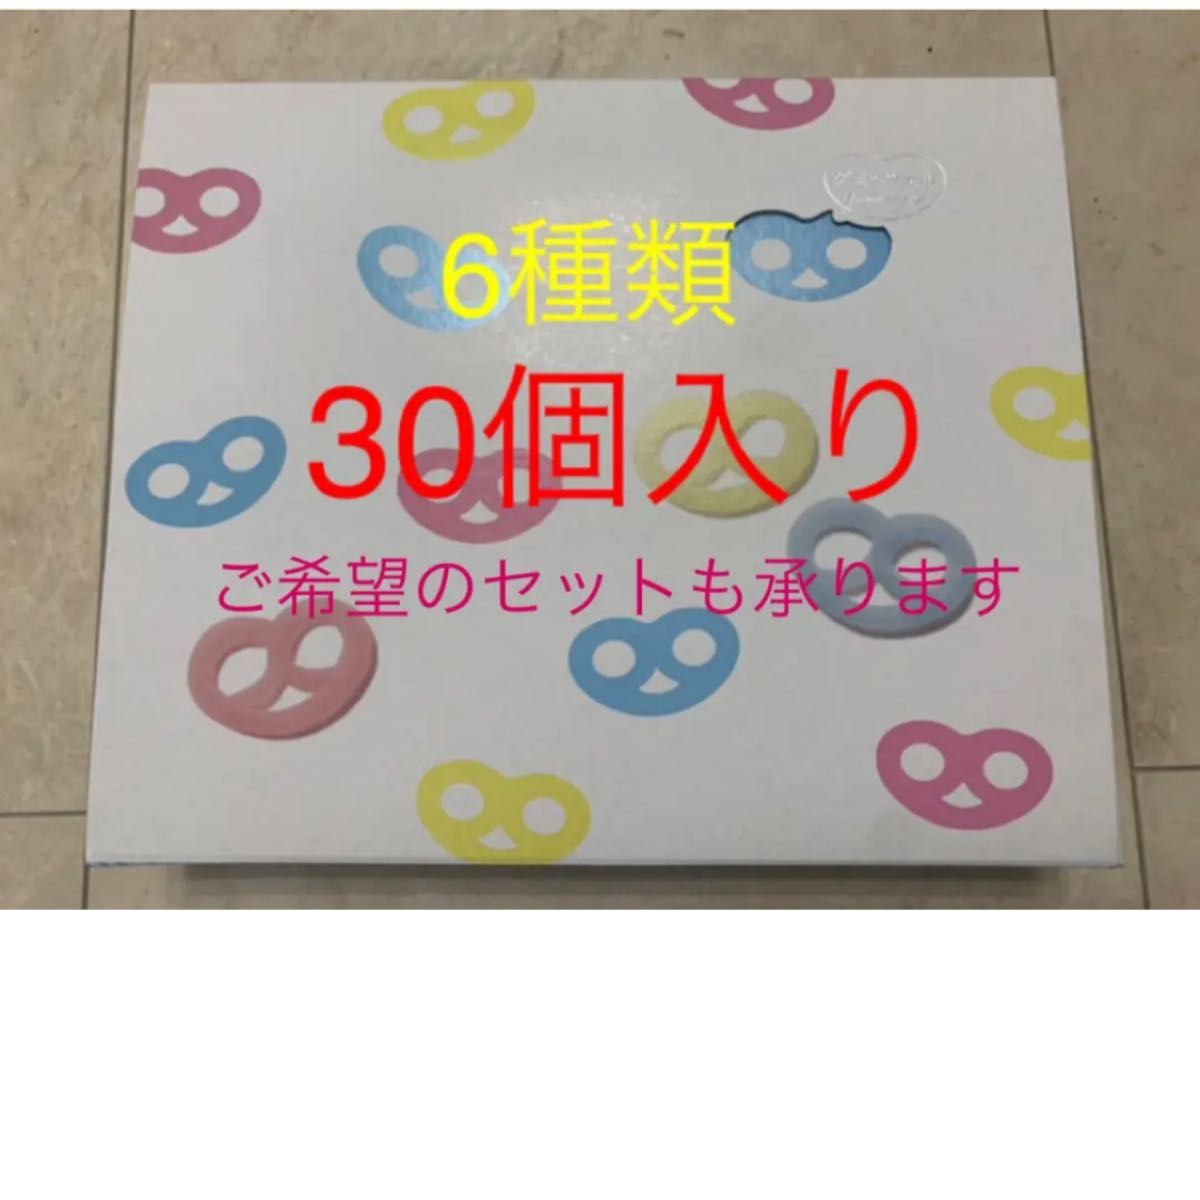 新品未開封品」ヒトツブカンロ グミッツェル 30個 BOX 3箱セット - 菓子